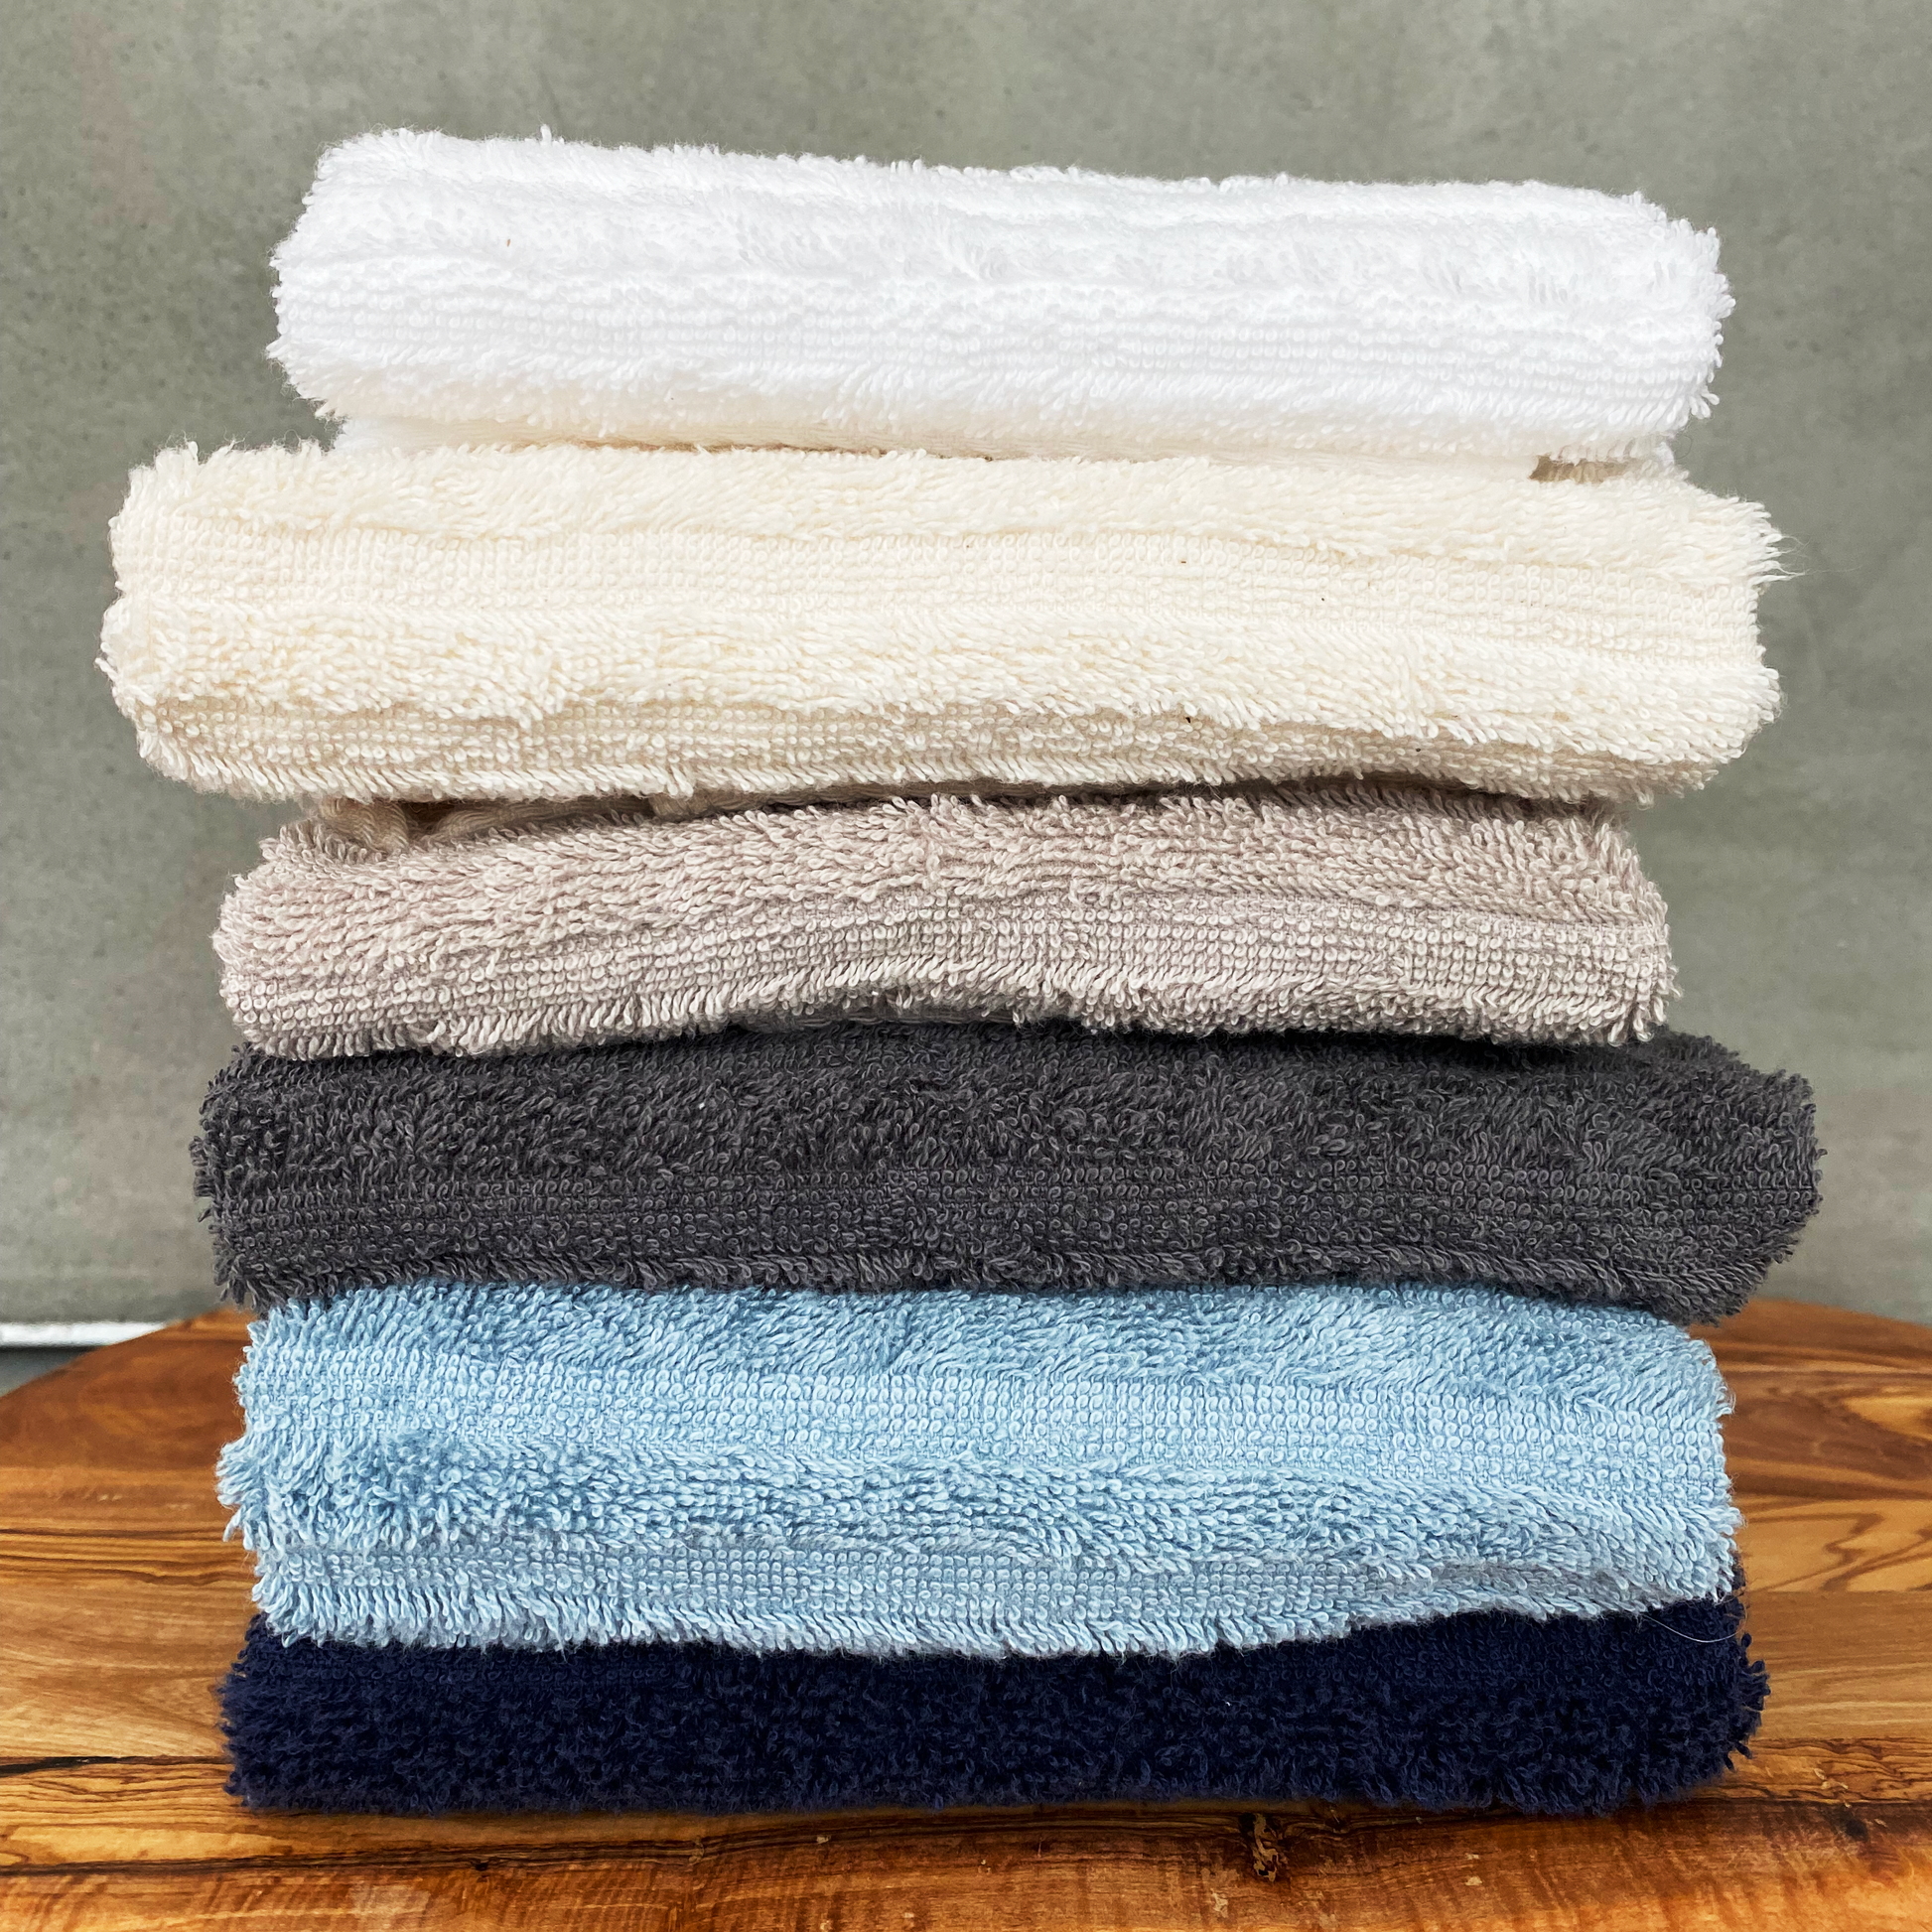 Towel and Linen Mart 4 Pieces Bath Towels Sets - Zimbabwe